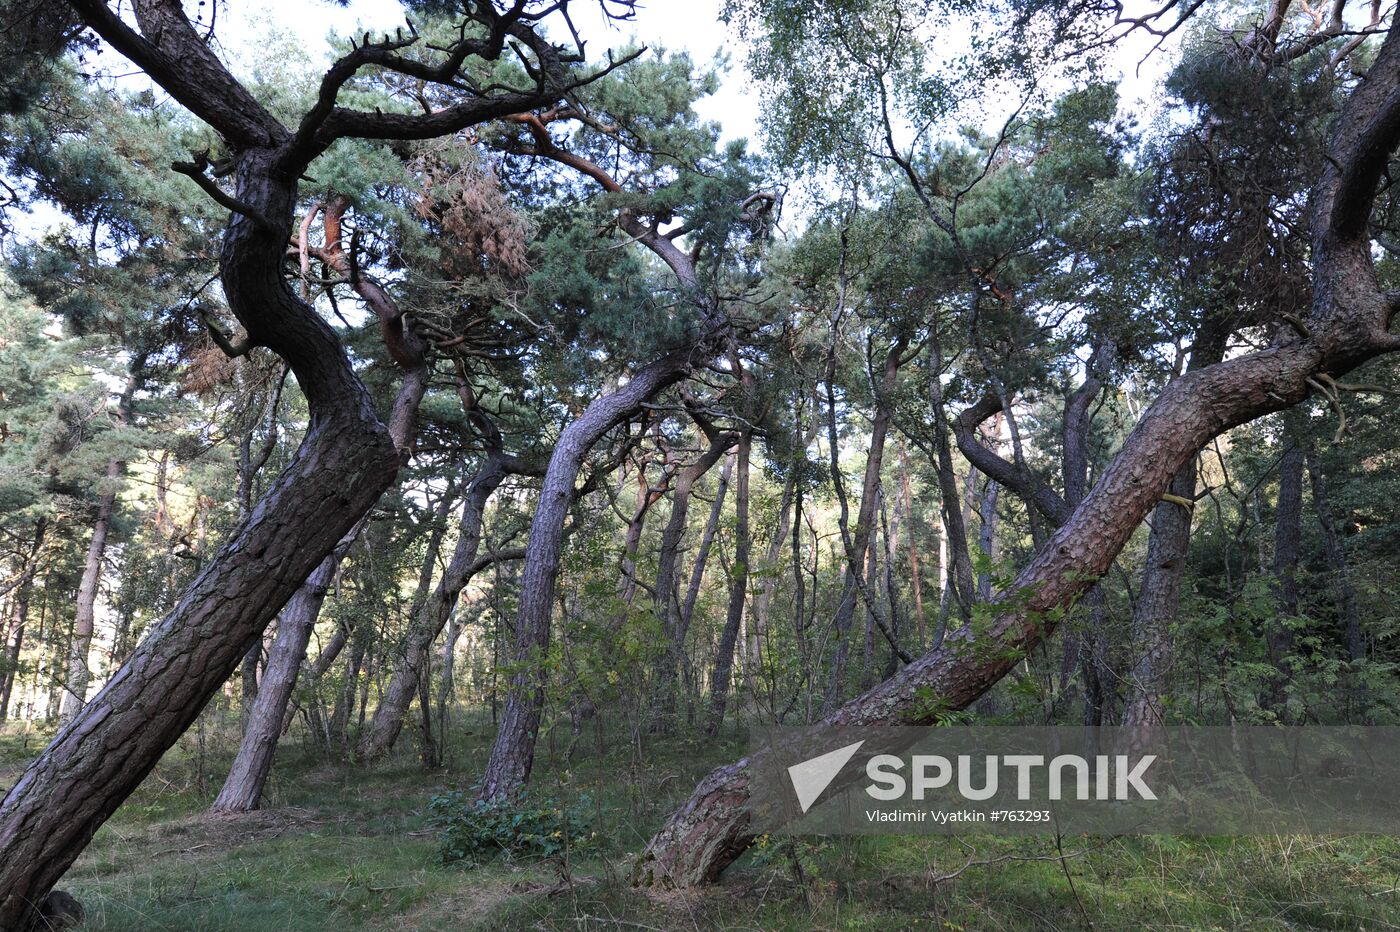 Curonian Spit (Kursiu nerija) National Park, Lithuania